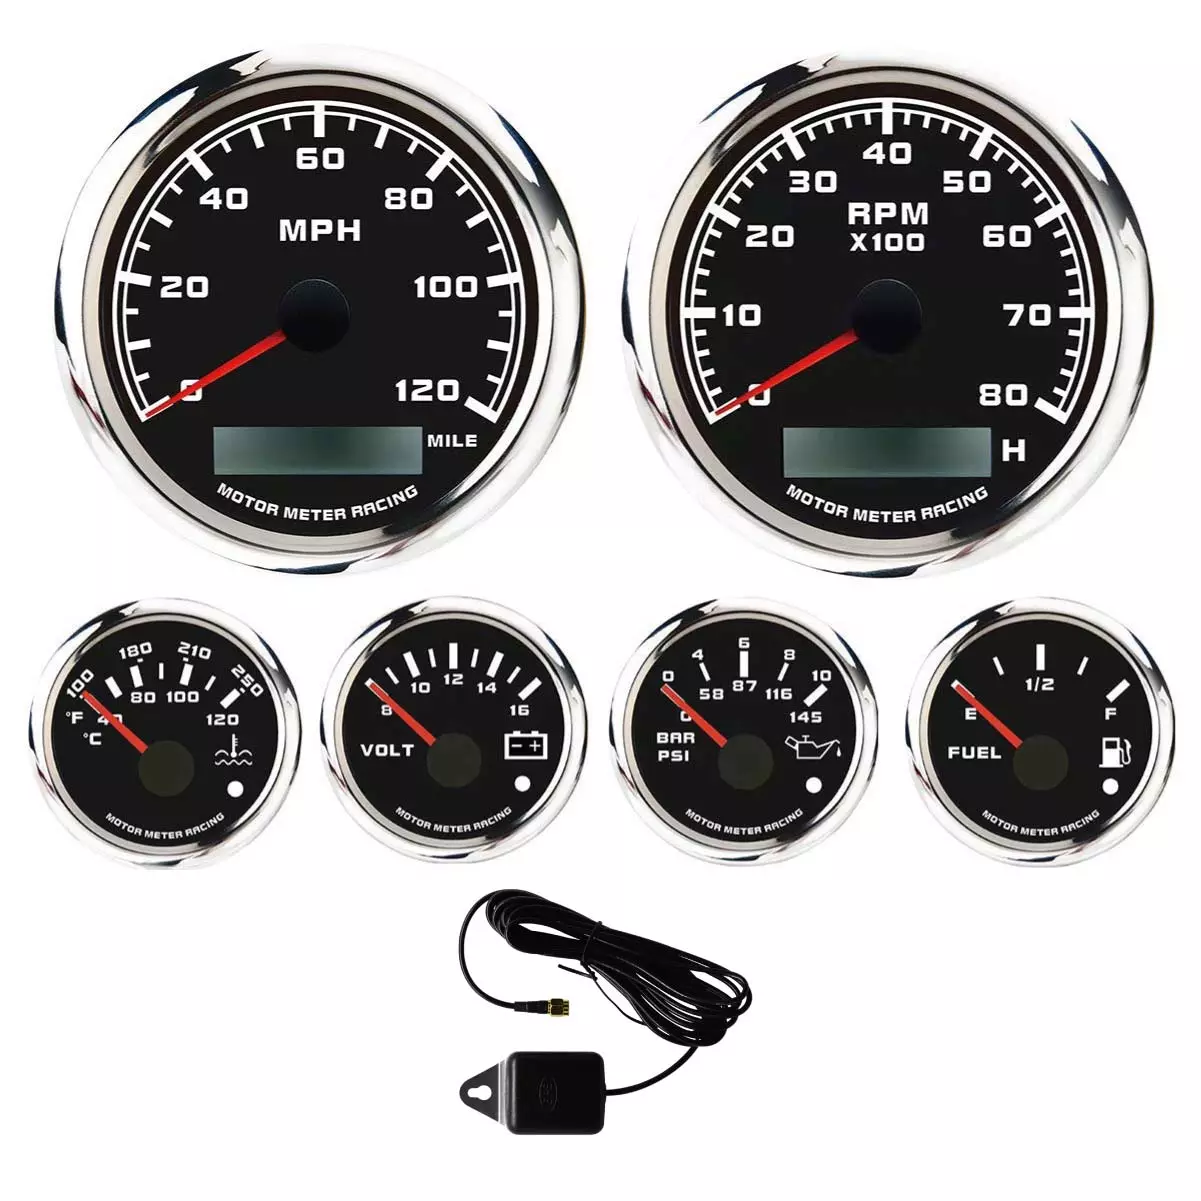 MOTOR METER RACING W Pro Series 6 Gauge Set with GPS Speedometer Programmable Waterproof Black Dial All Sensors Included